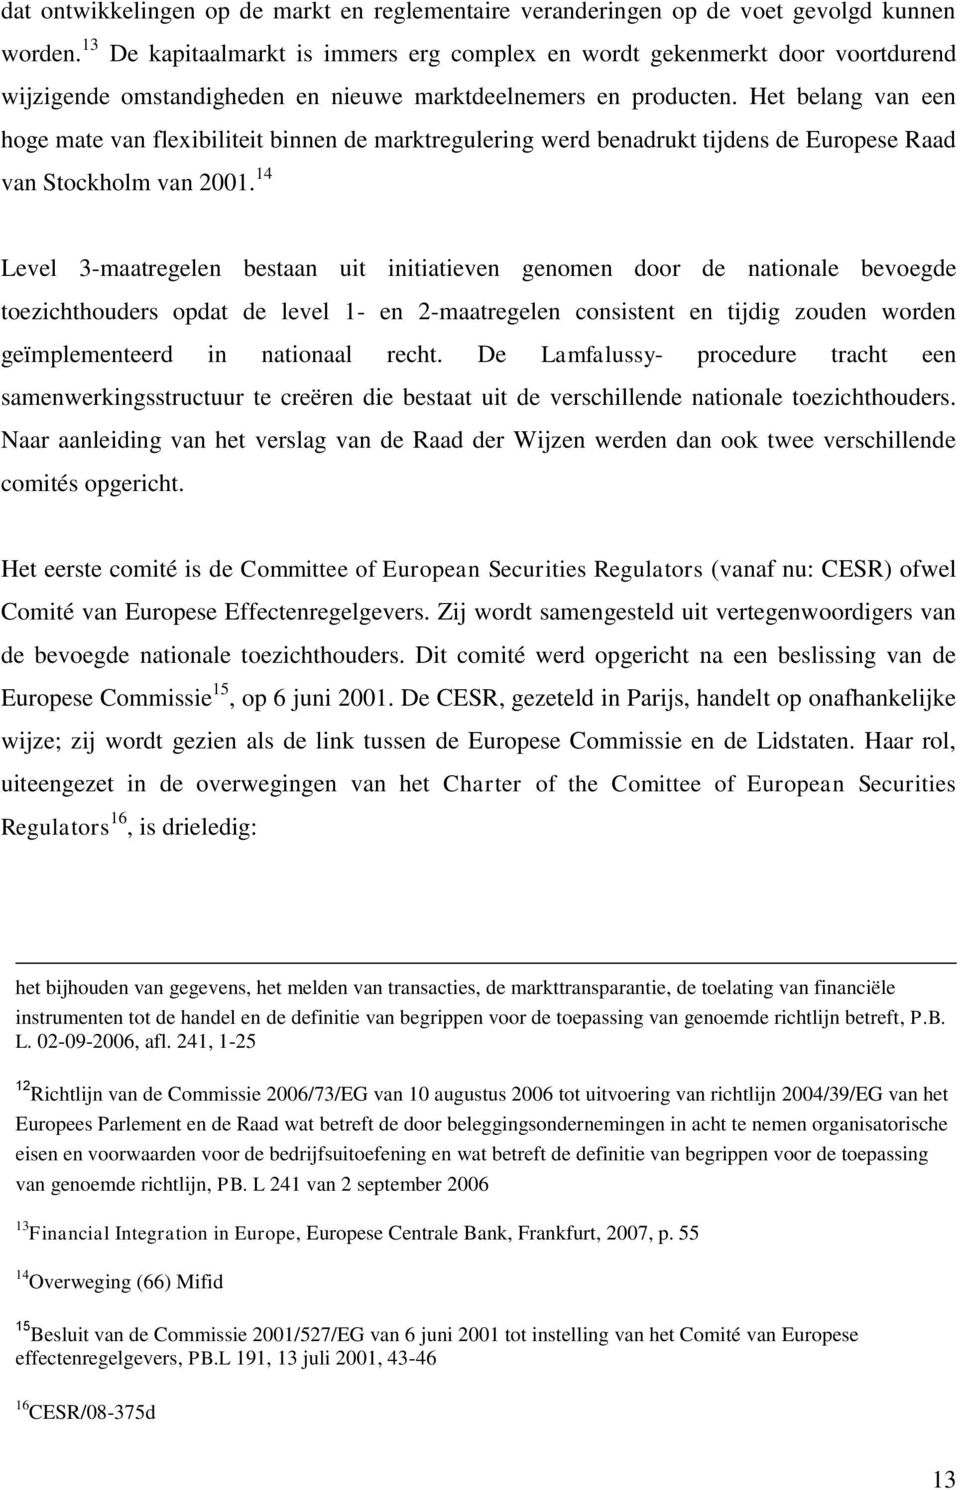 Het belang van een hoge mate van flexibiliteit binnen de marktregulering werd benadrukt tijdens de Europese Raad van Stockholm van 2001.